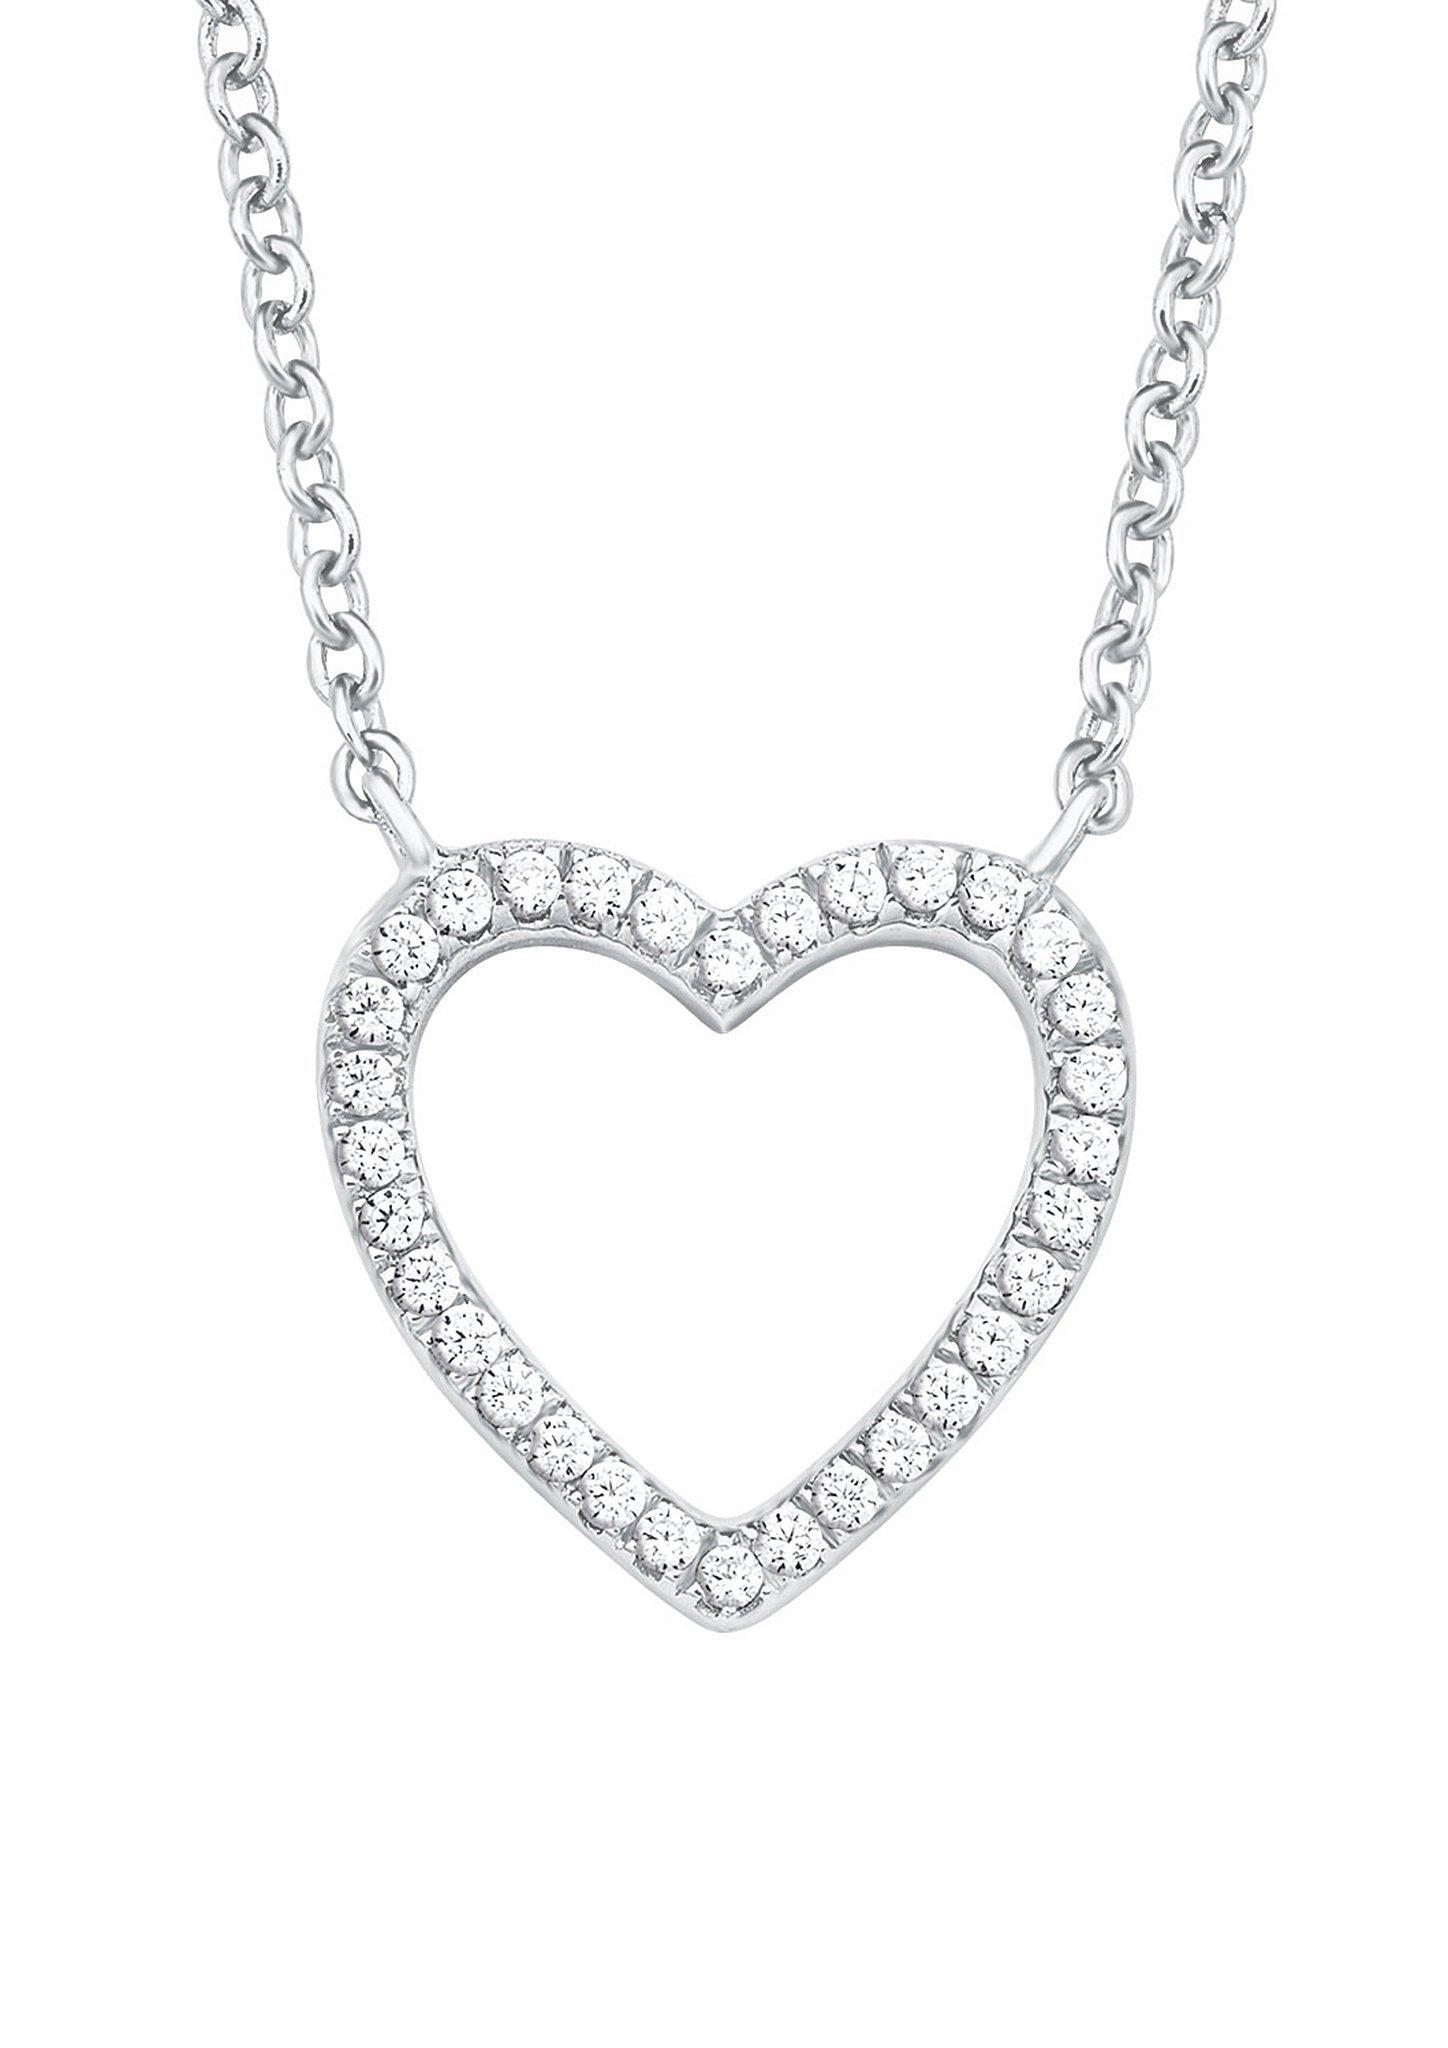 Silberne Halskette Herz mit Zirkonia - silber